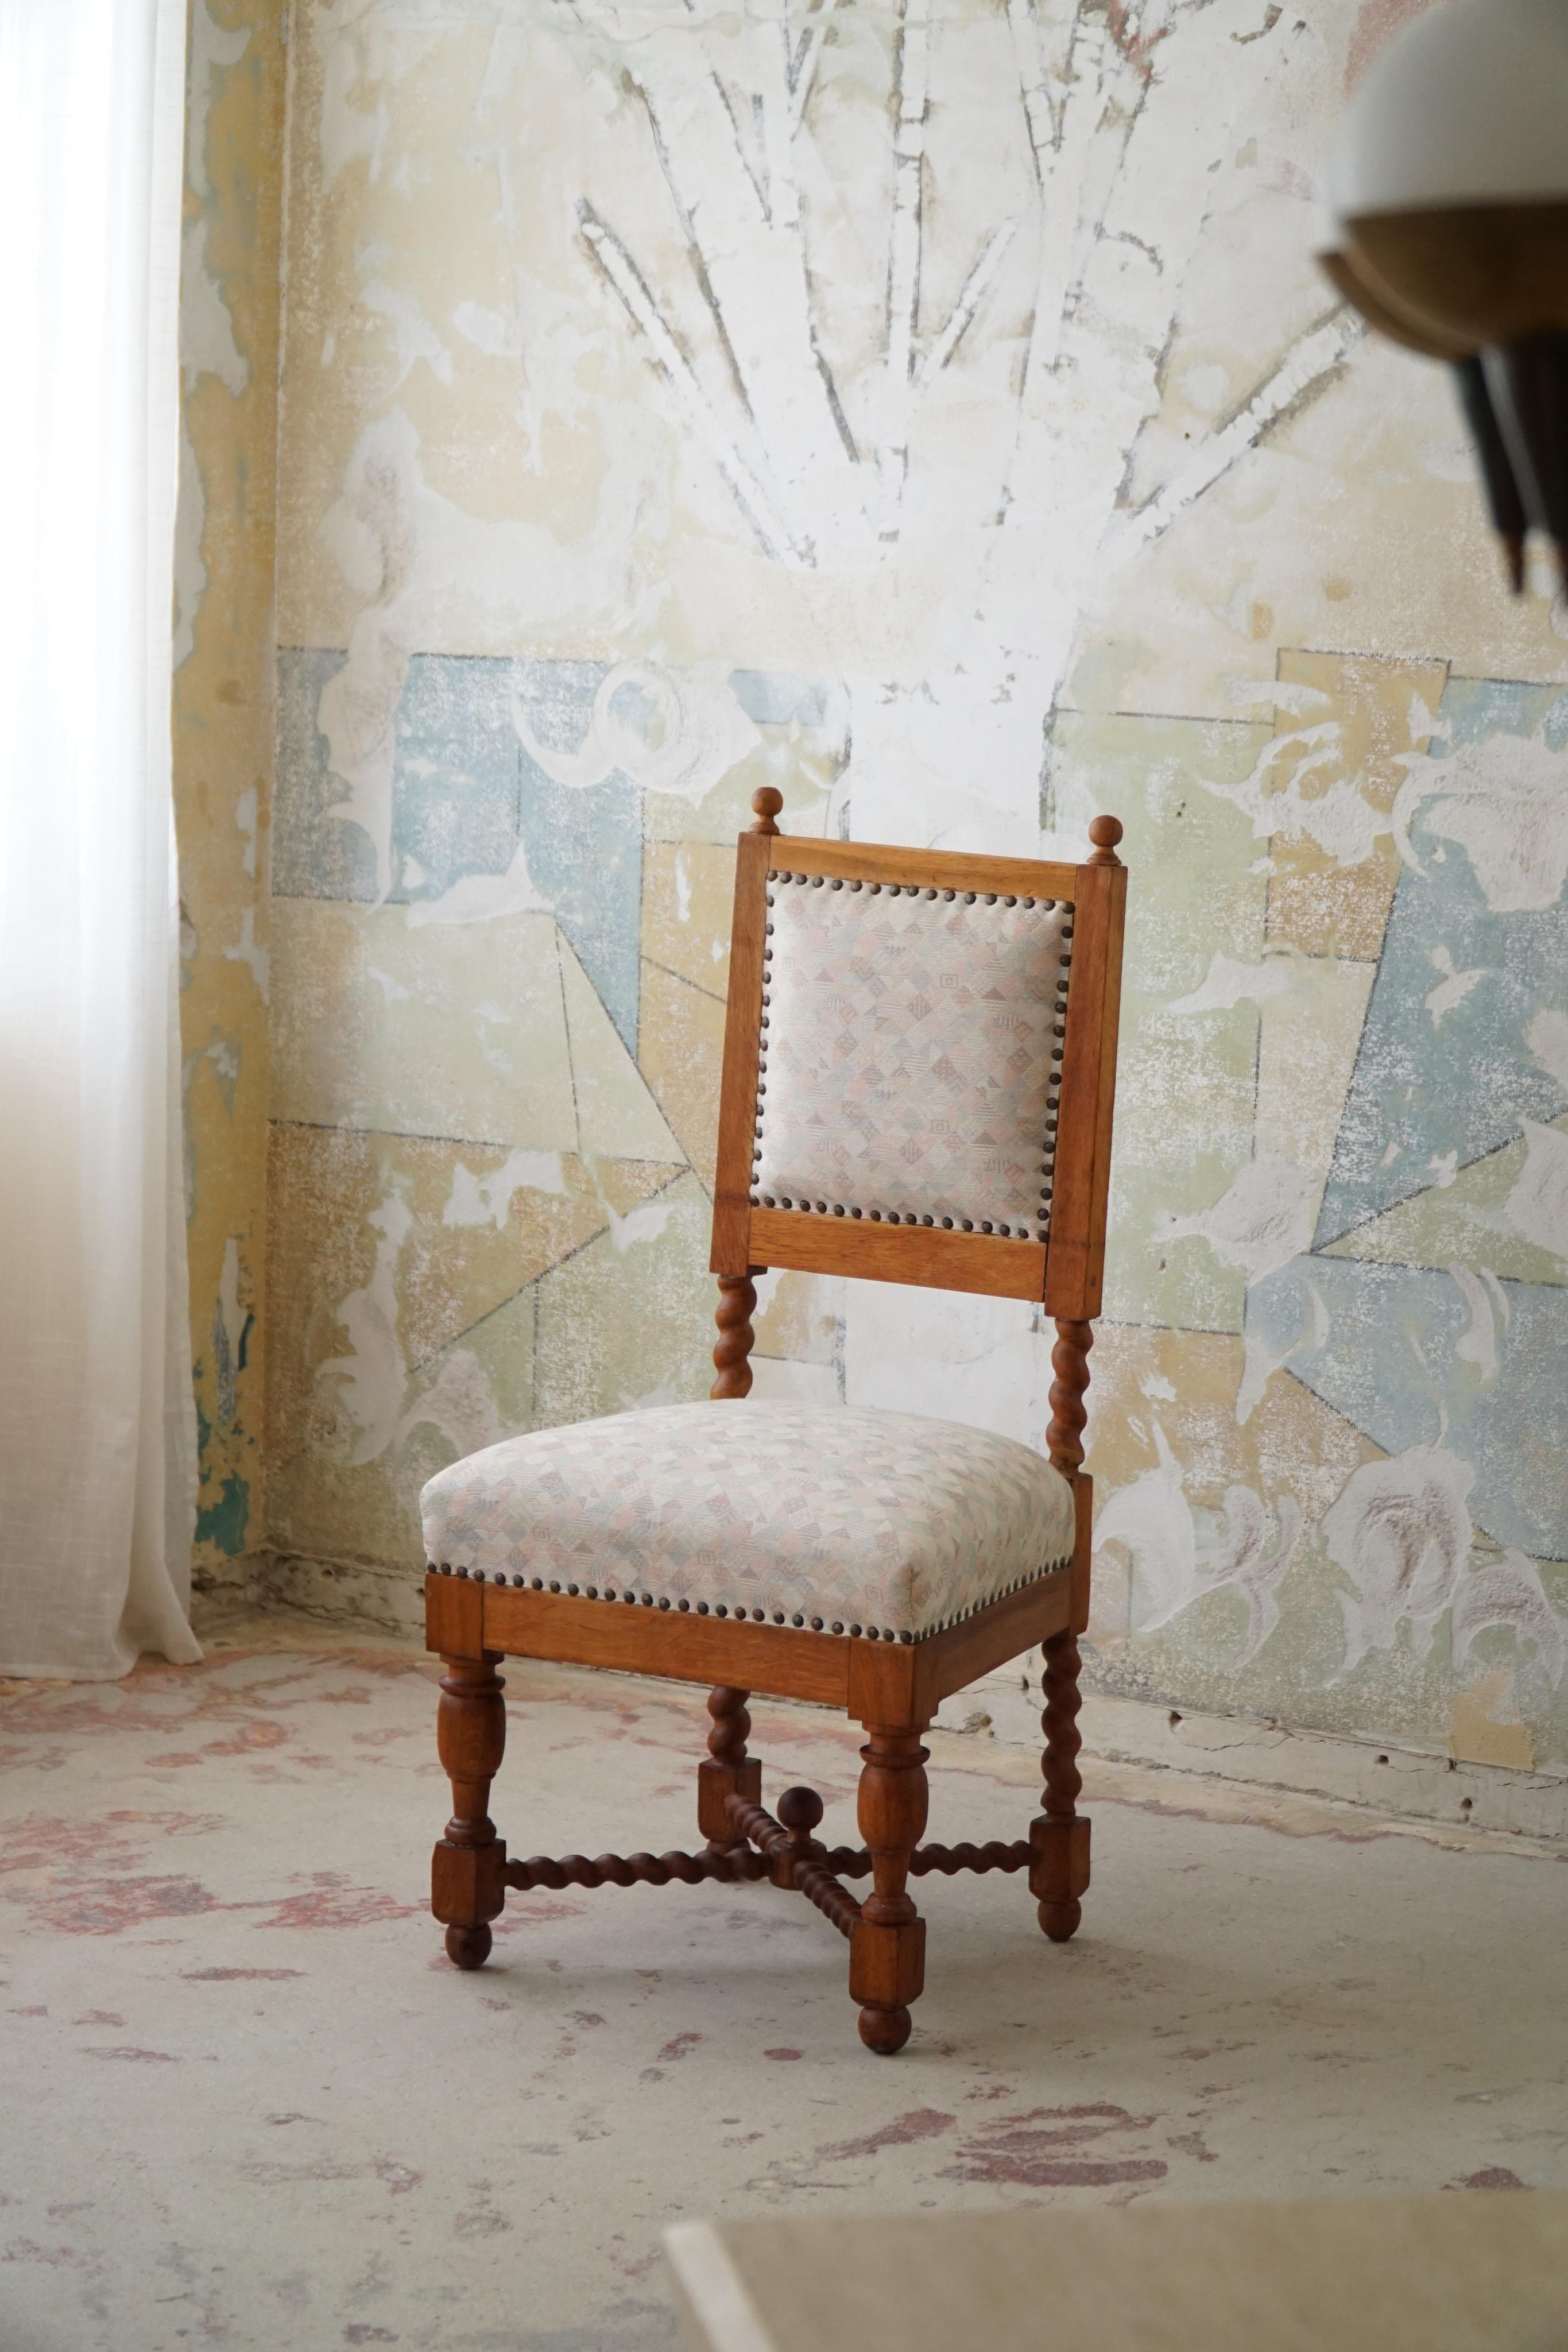 Exquise et intemporelle, la chaise anglaise de style baroque avec pieds en torsion d'orge en chêne des années 1920 incarne la grandeur et le savoir-faire d'une époque révolue. Cette chaise témoigne de l'opulence et de l'attention portée aux détails